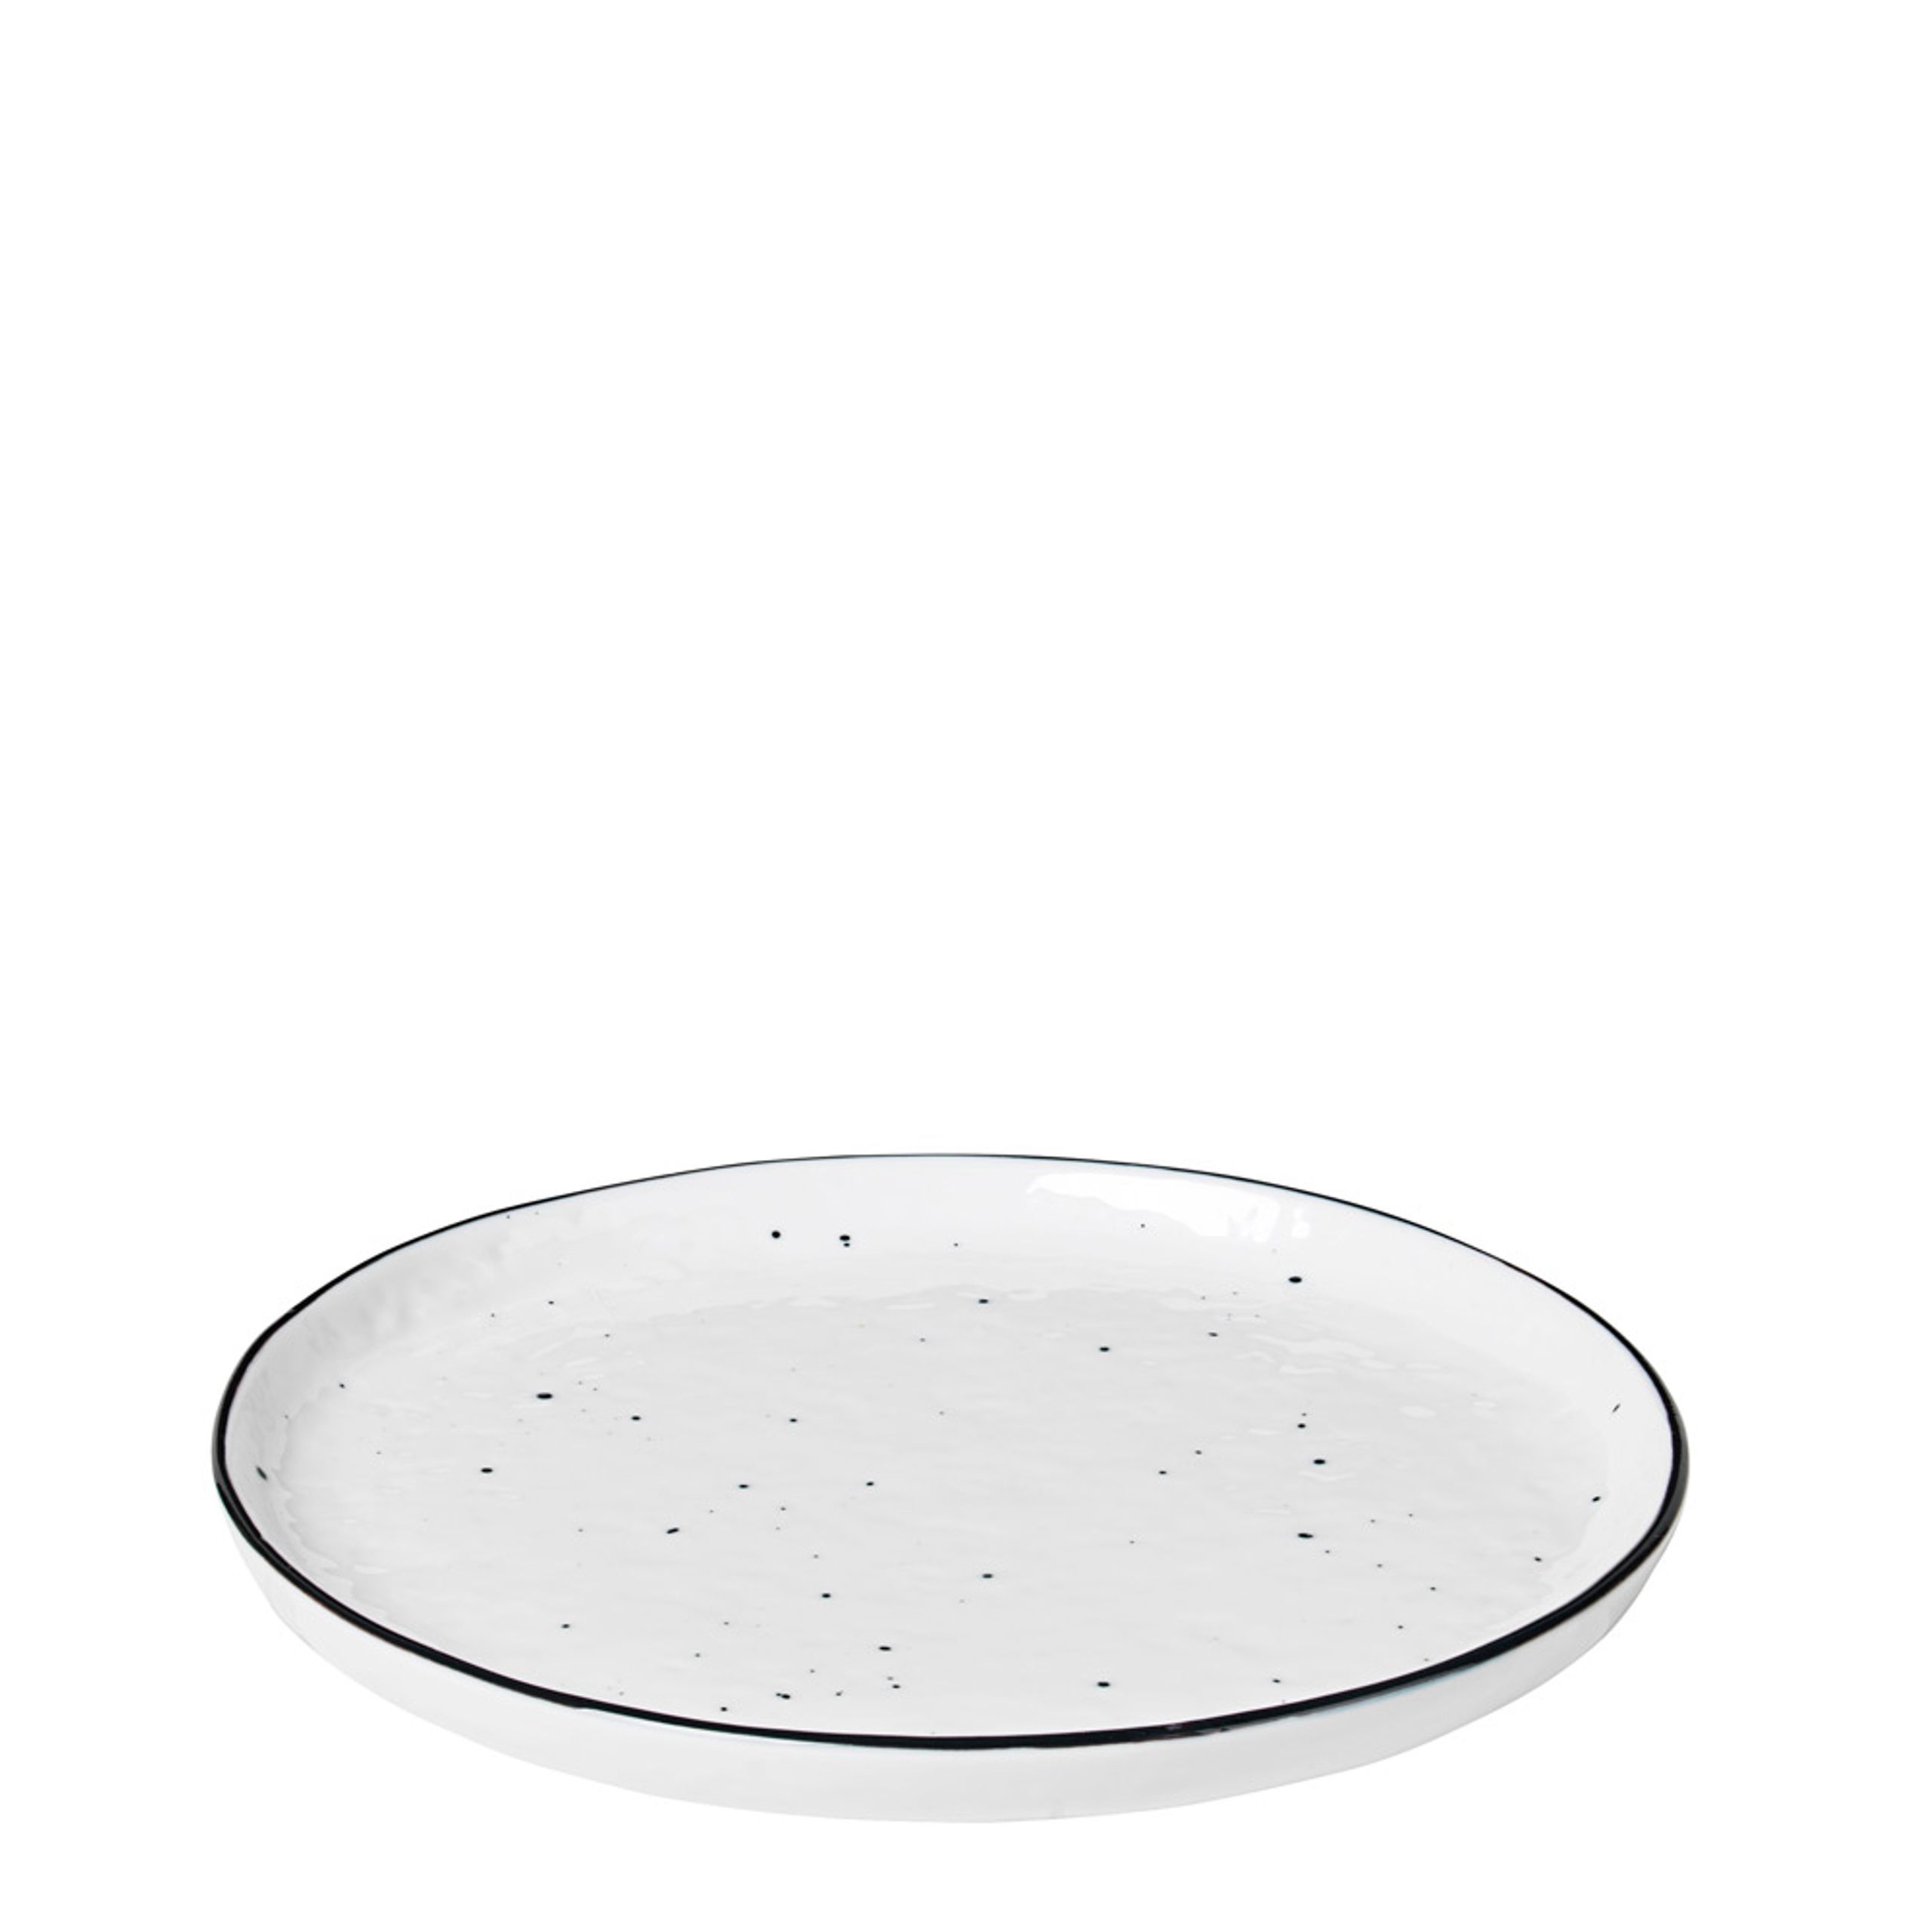 Broste CPH - Disque - Salt Dots - Plate - Dessert plate